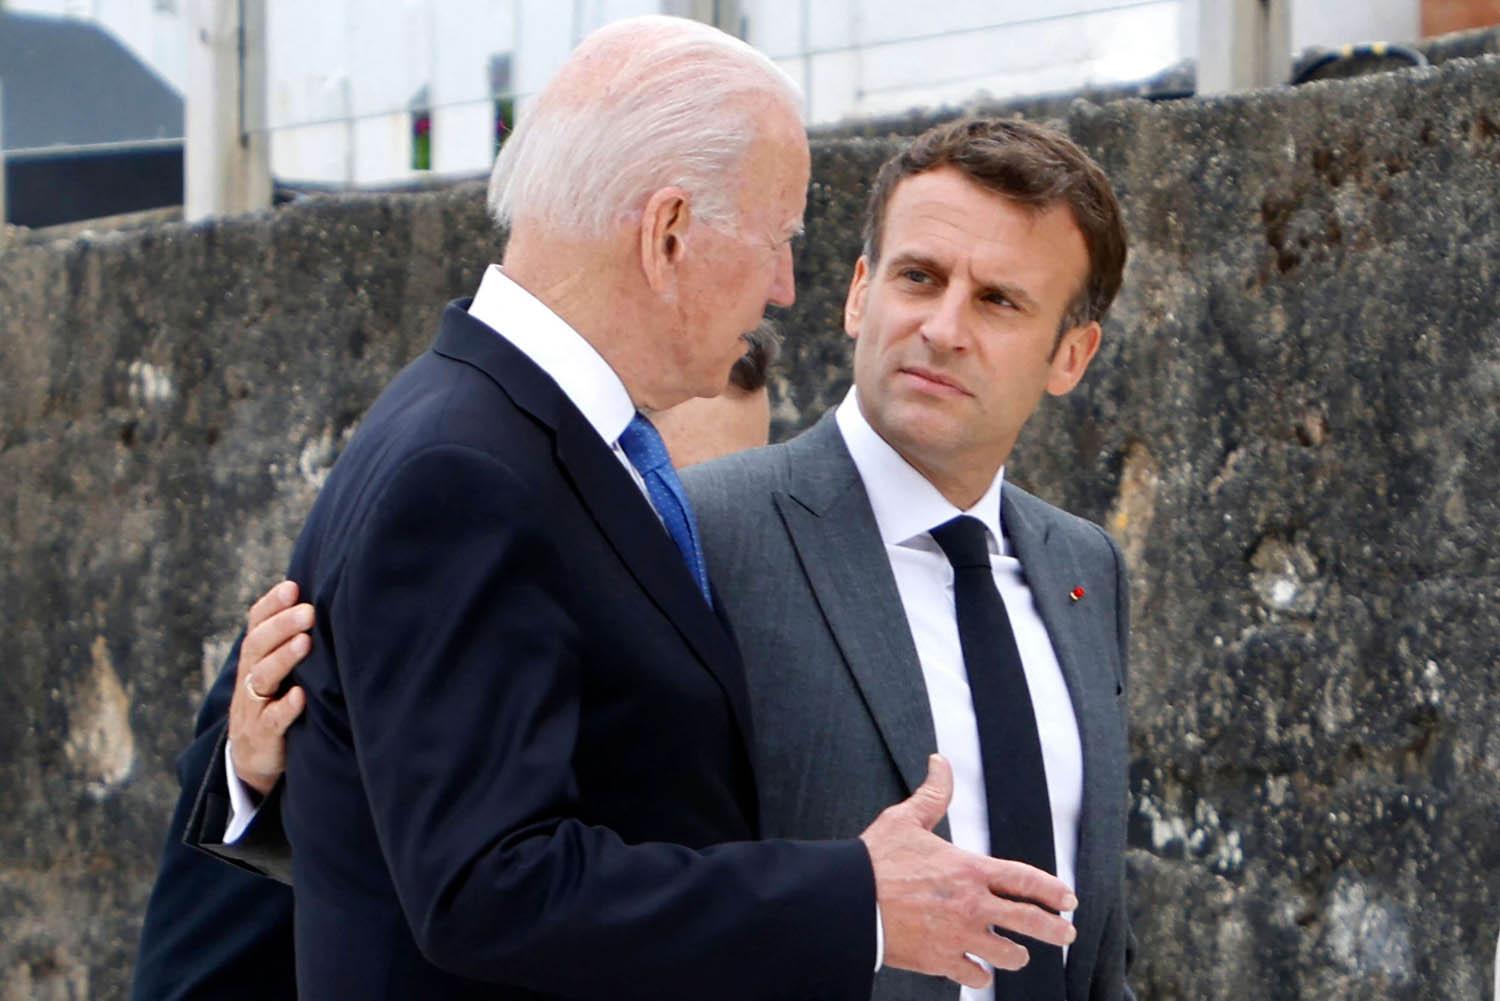 الرئيس الأميركي جو بايدن مع الرئيس الفرنسي ايمانويل ماكرون